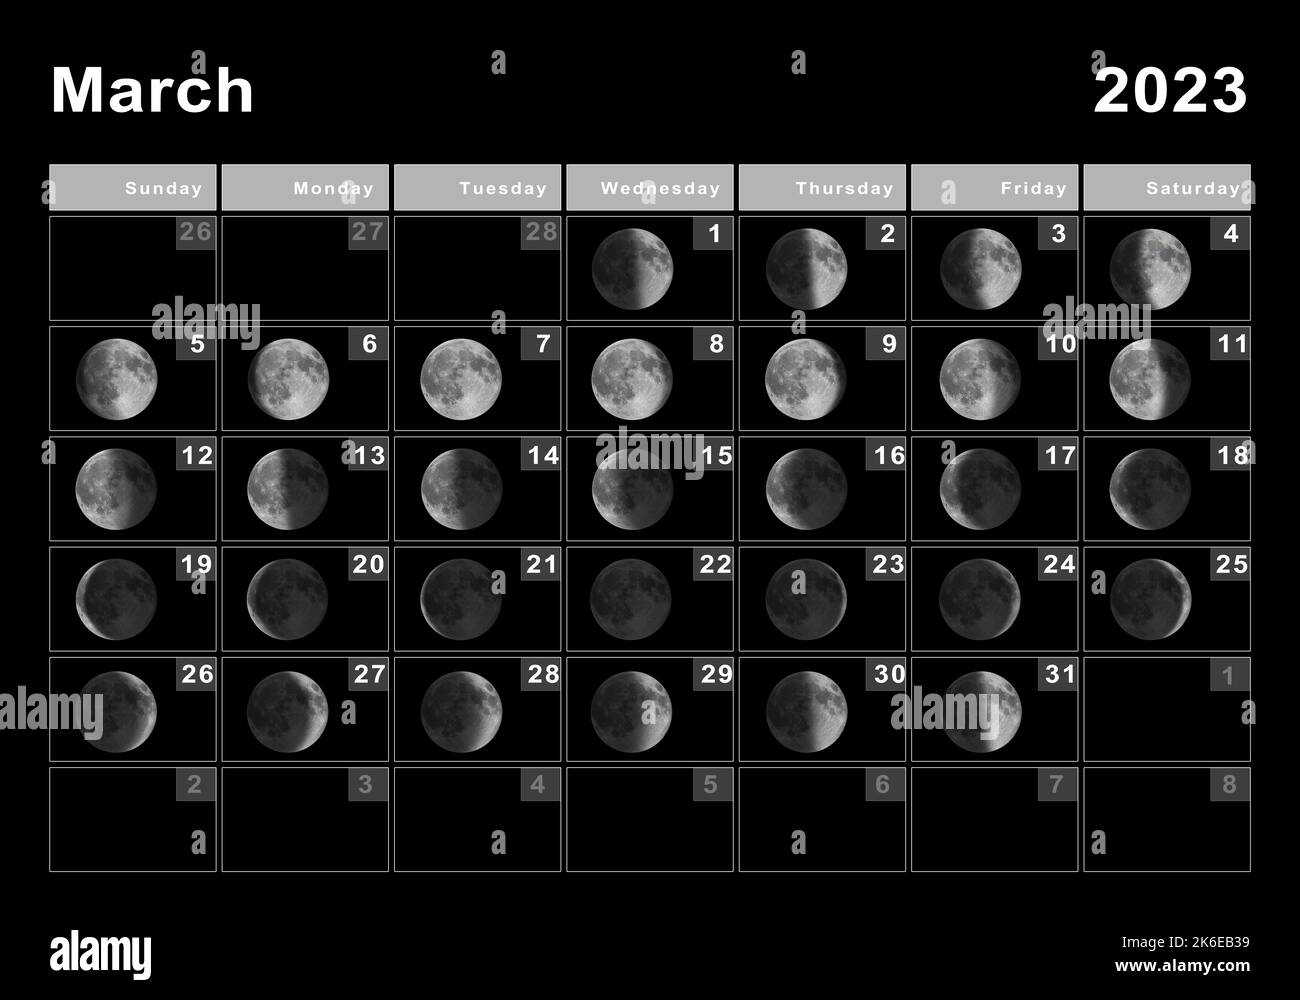 Calendario Lunar De Marzo Del 2023 Con IMAGESEE